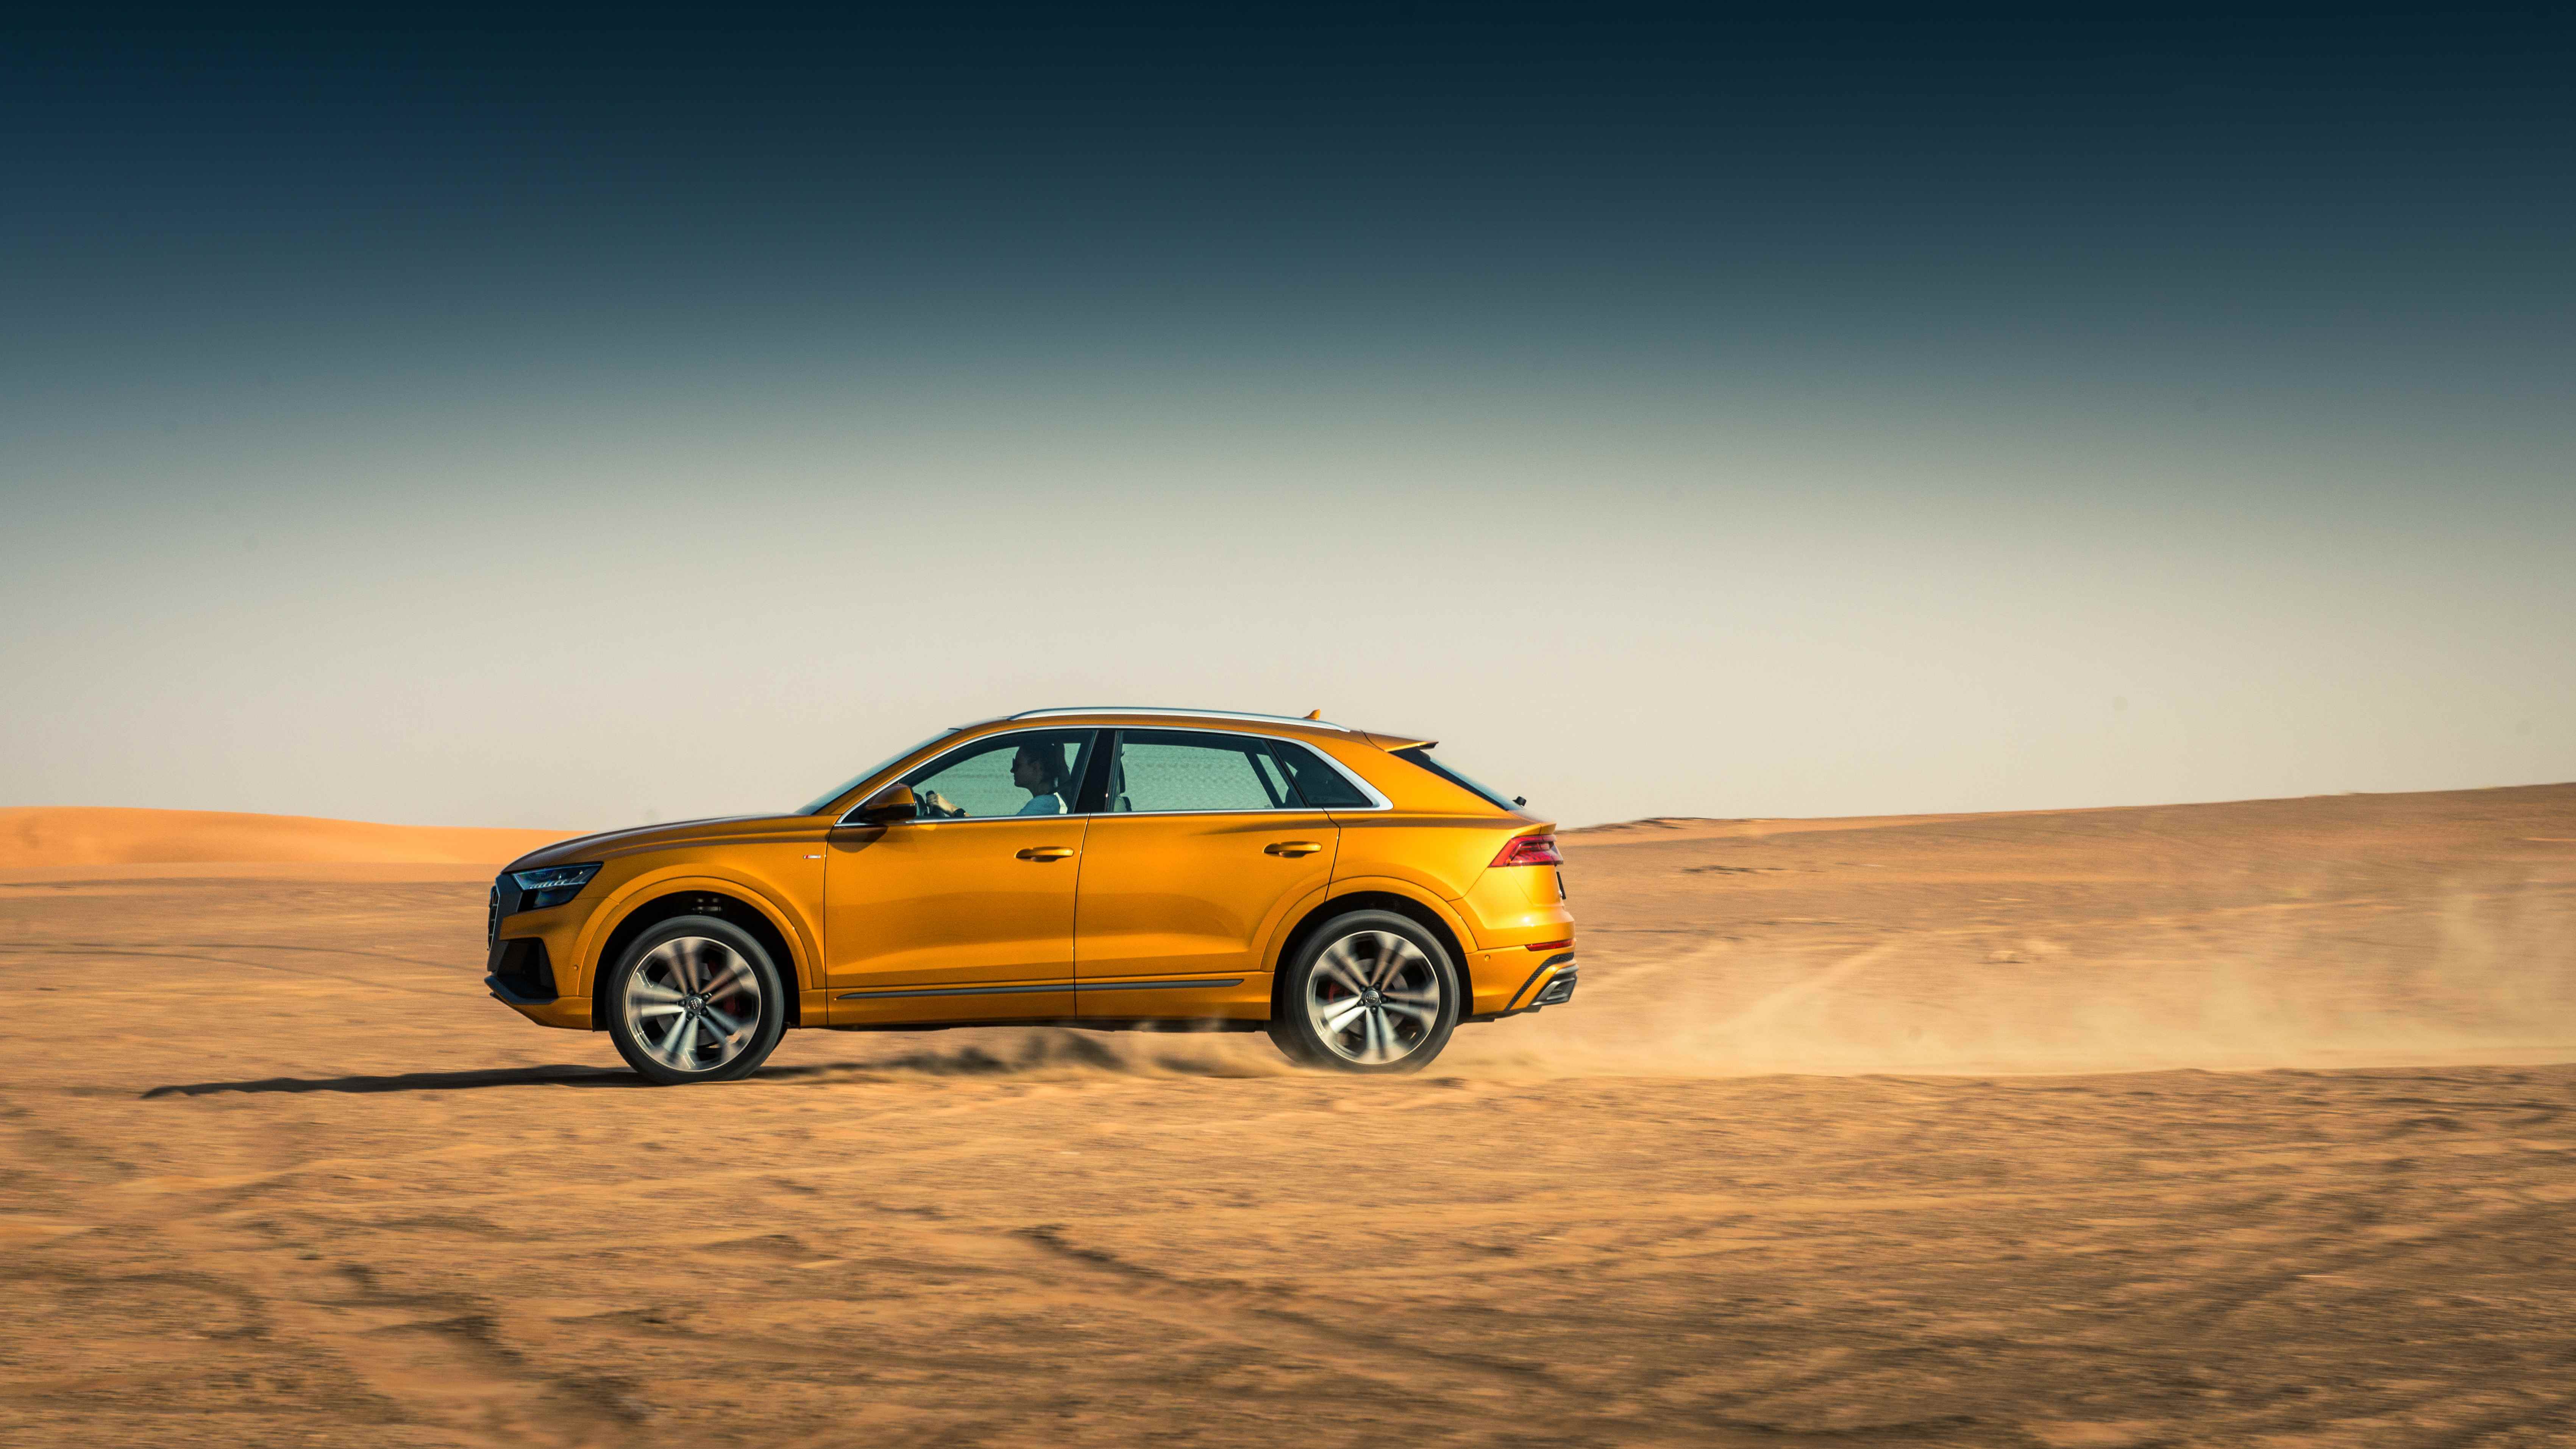  Audi Q8 تتصدر مبيعات النصف الأول من العام في أودي الشرق الأوسط